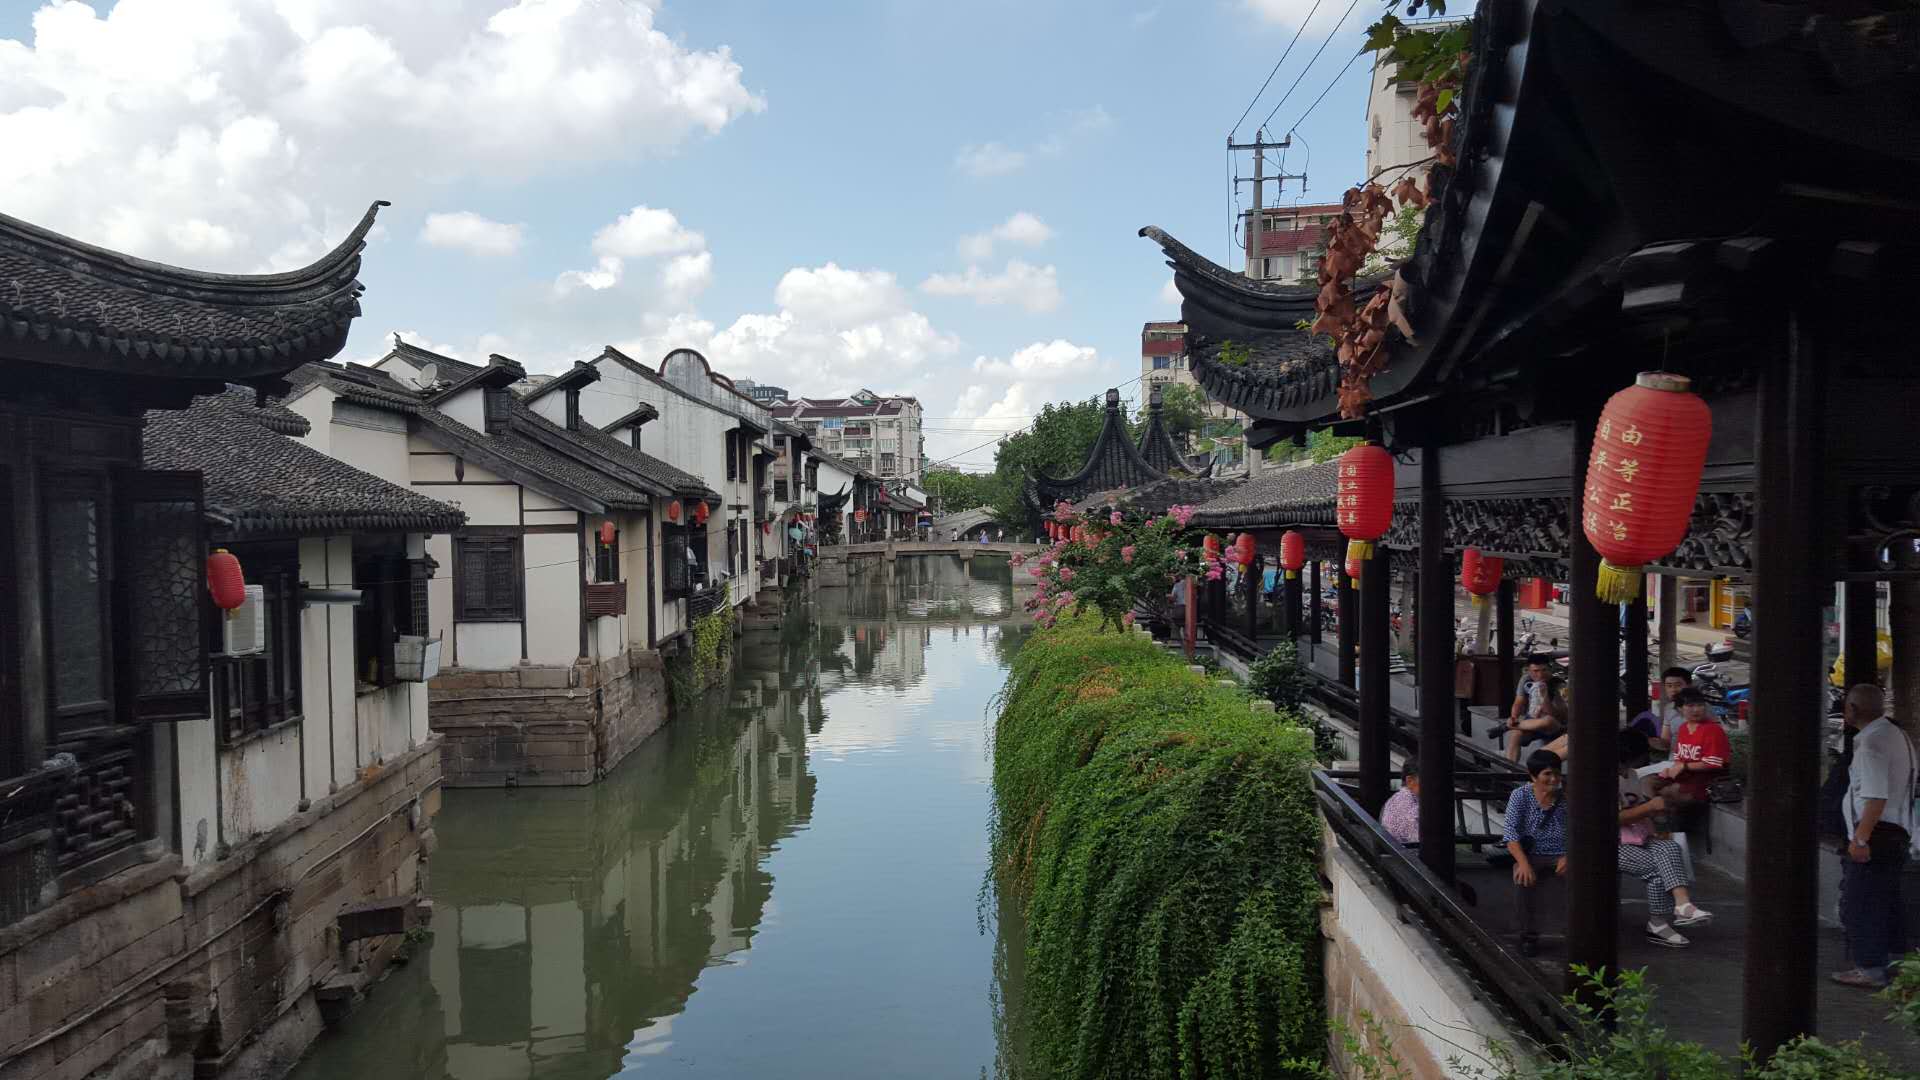 《曲院风荷话南翔》 南翔是建于五代时期的千年古镇，上海市四大历史文化古镇之一。老街上的云翔寺始建于南